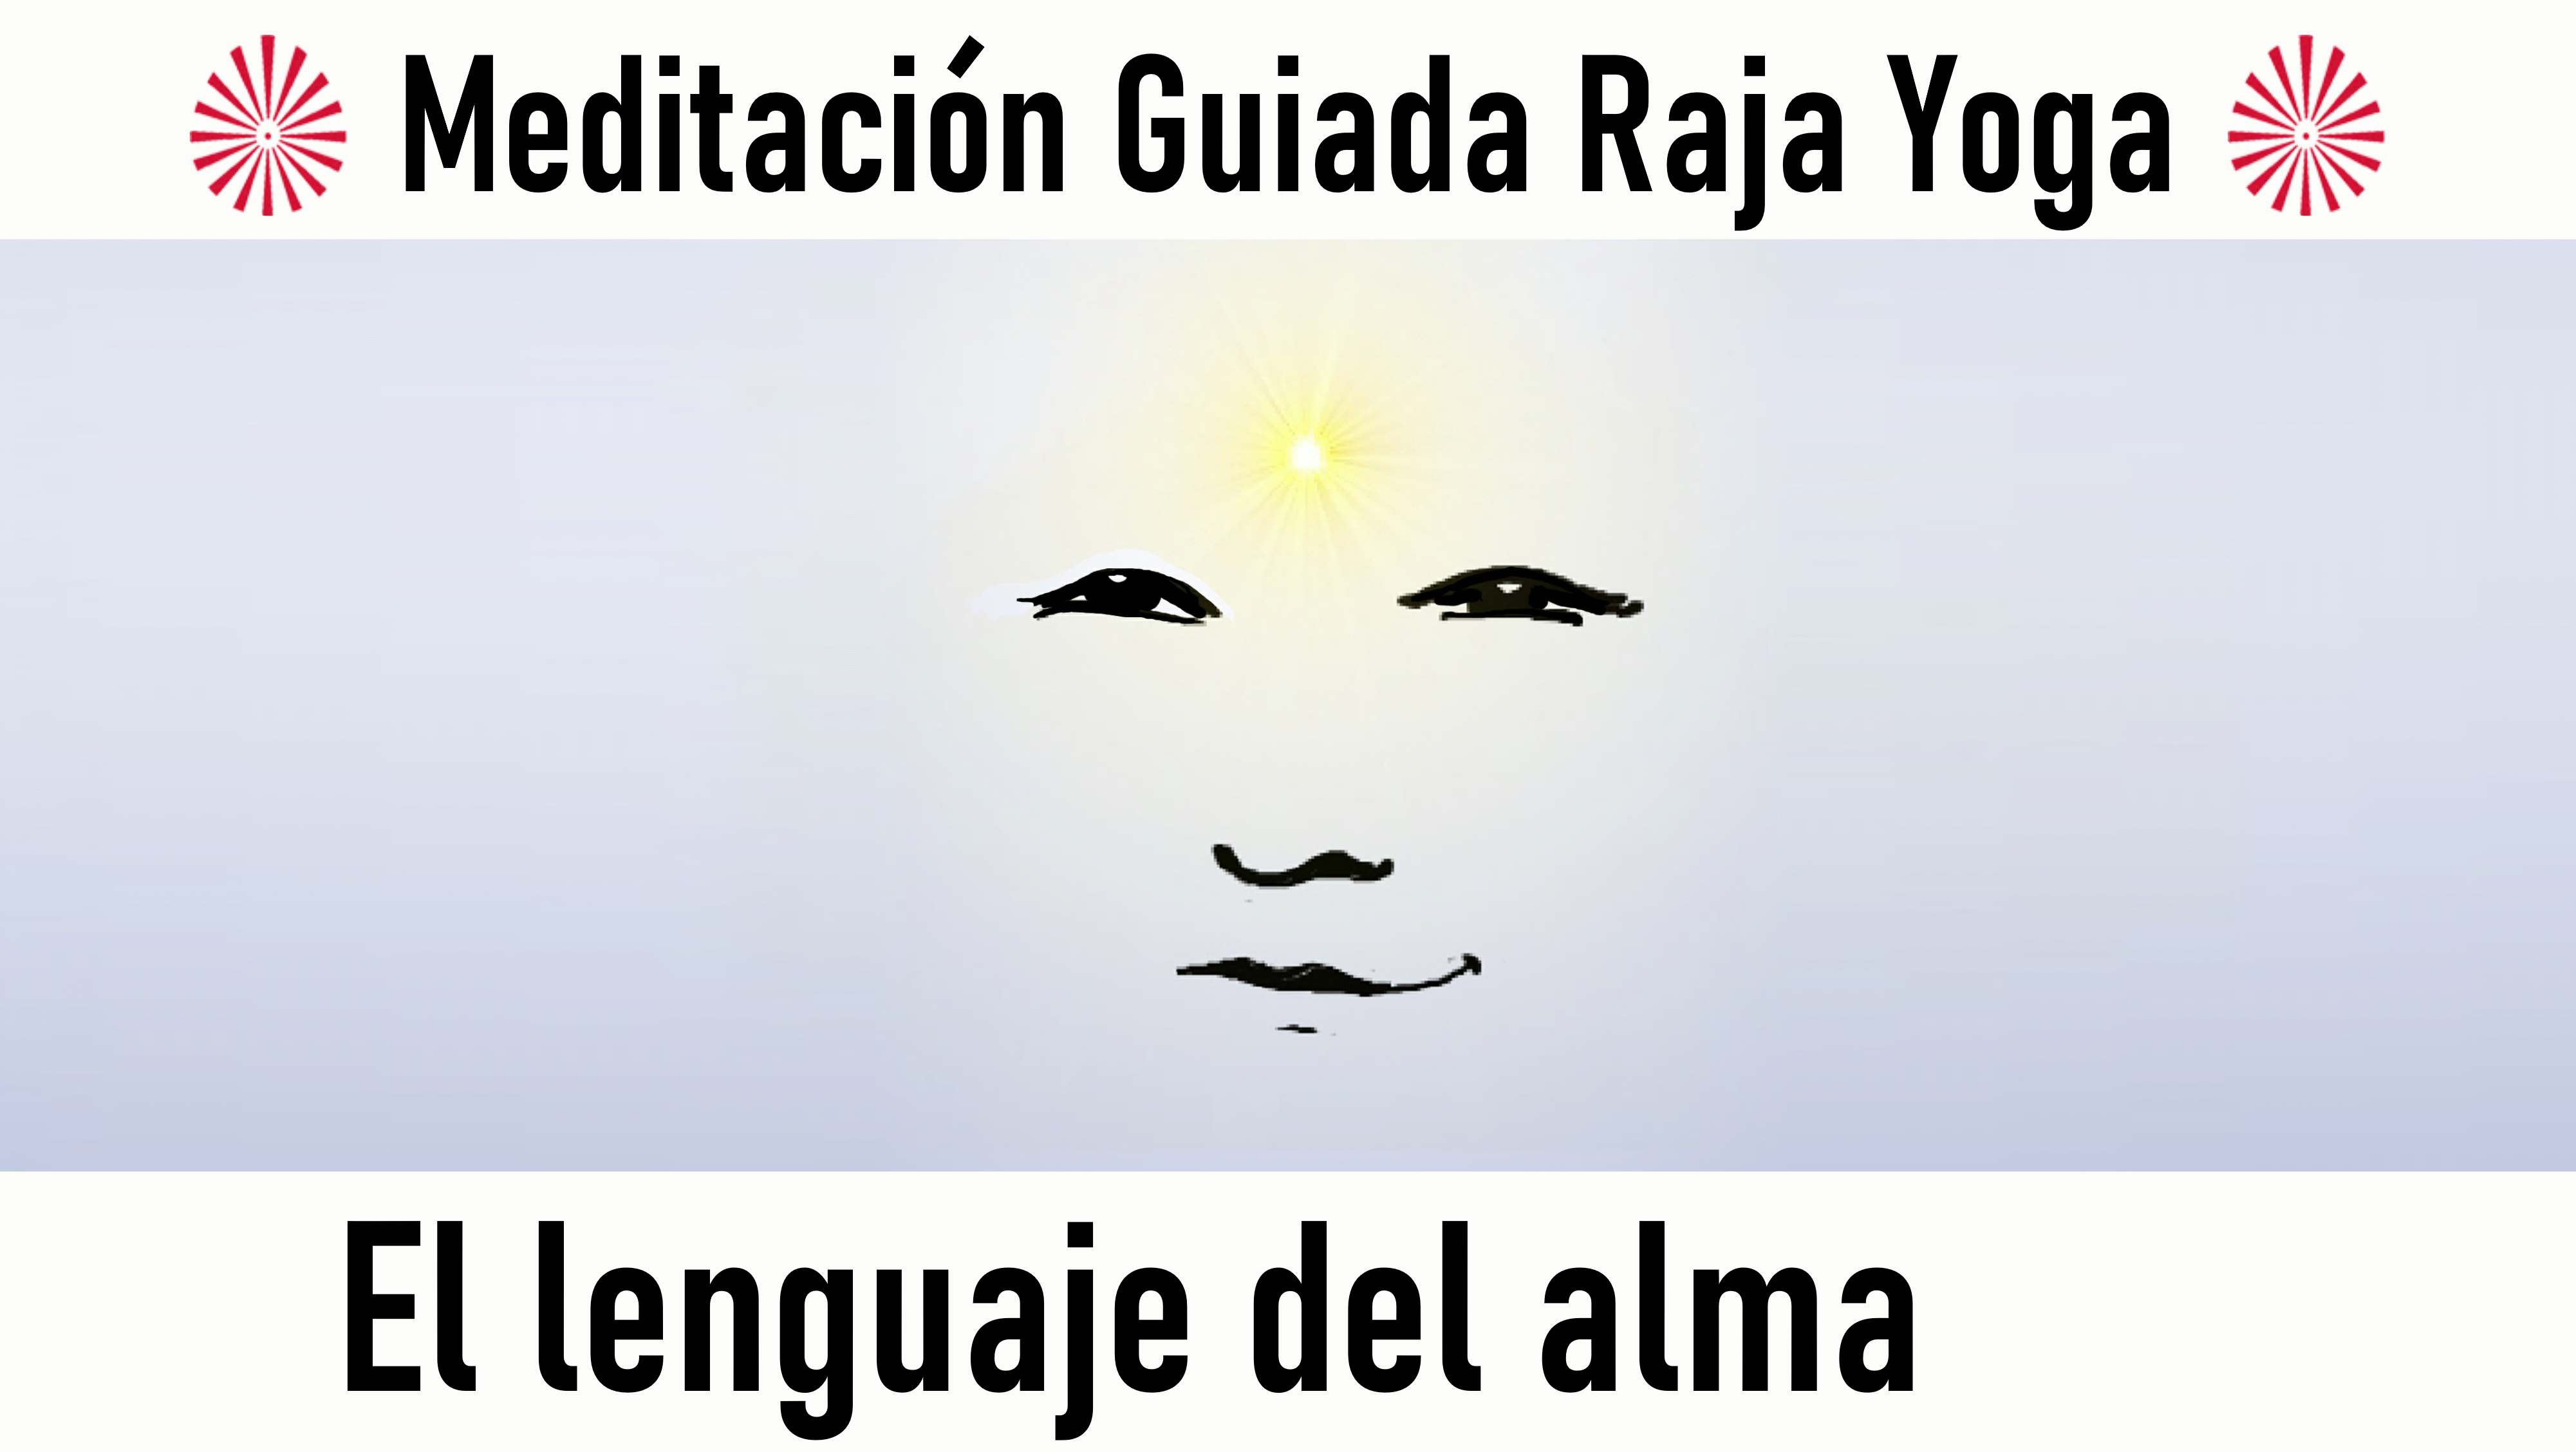 Meditación Raja Yoga: El lenguaje del alma (27 Agosto 2020) On-line desde Barcelona